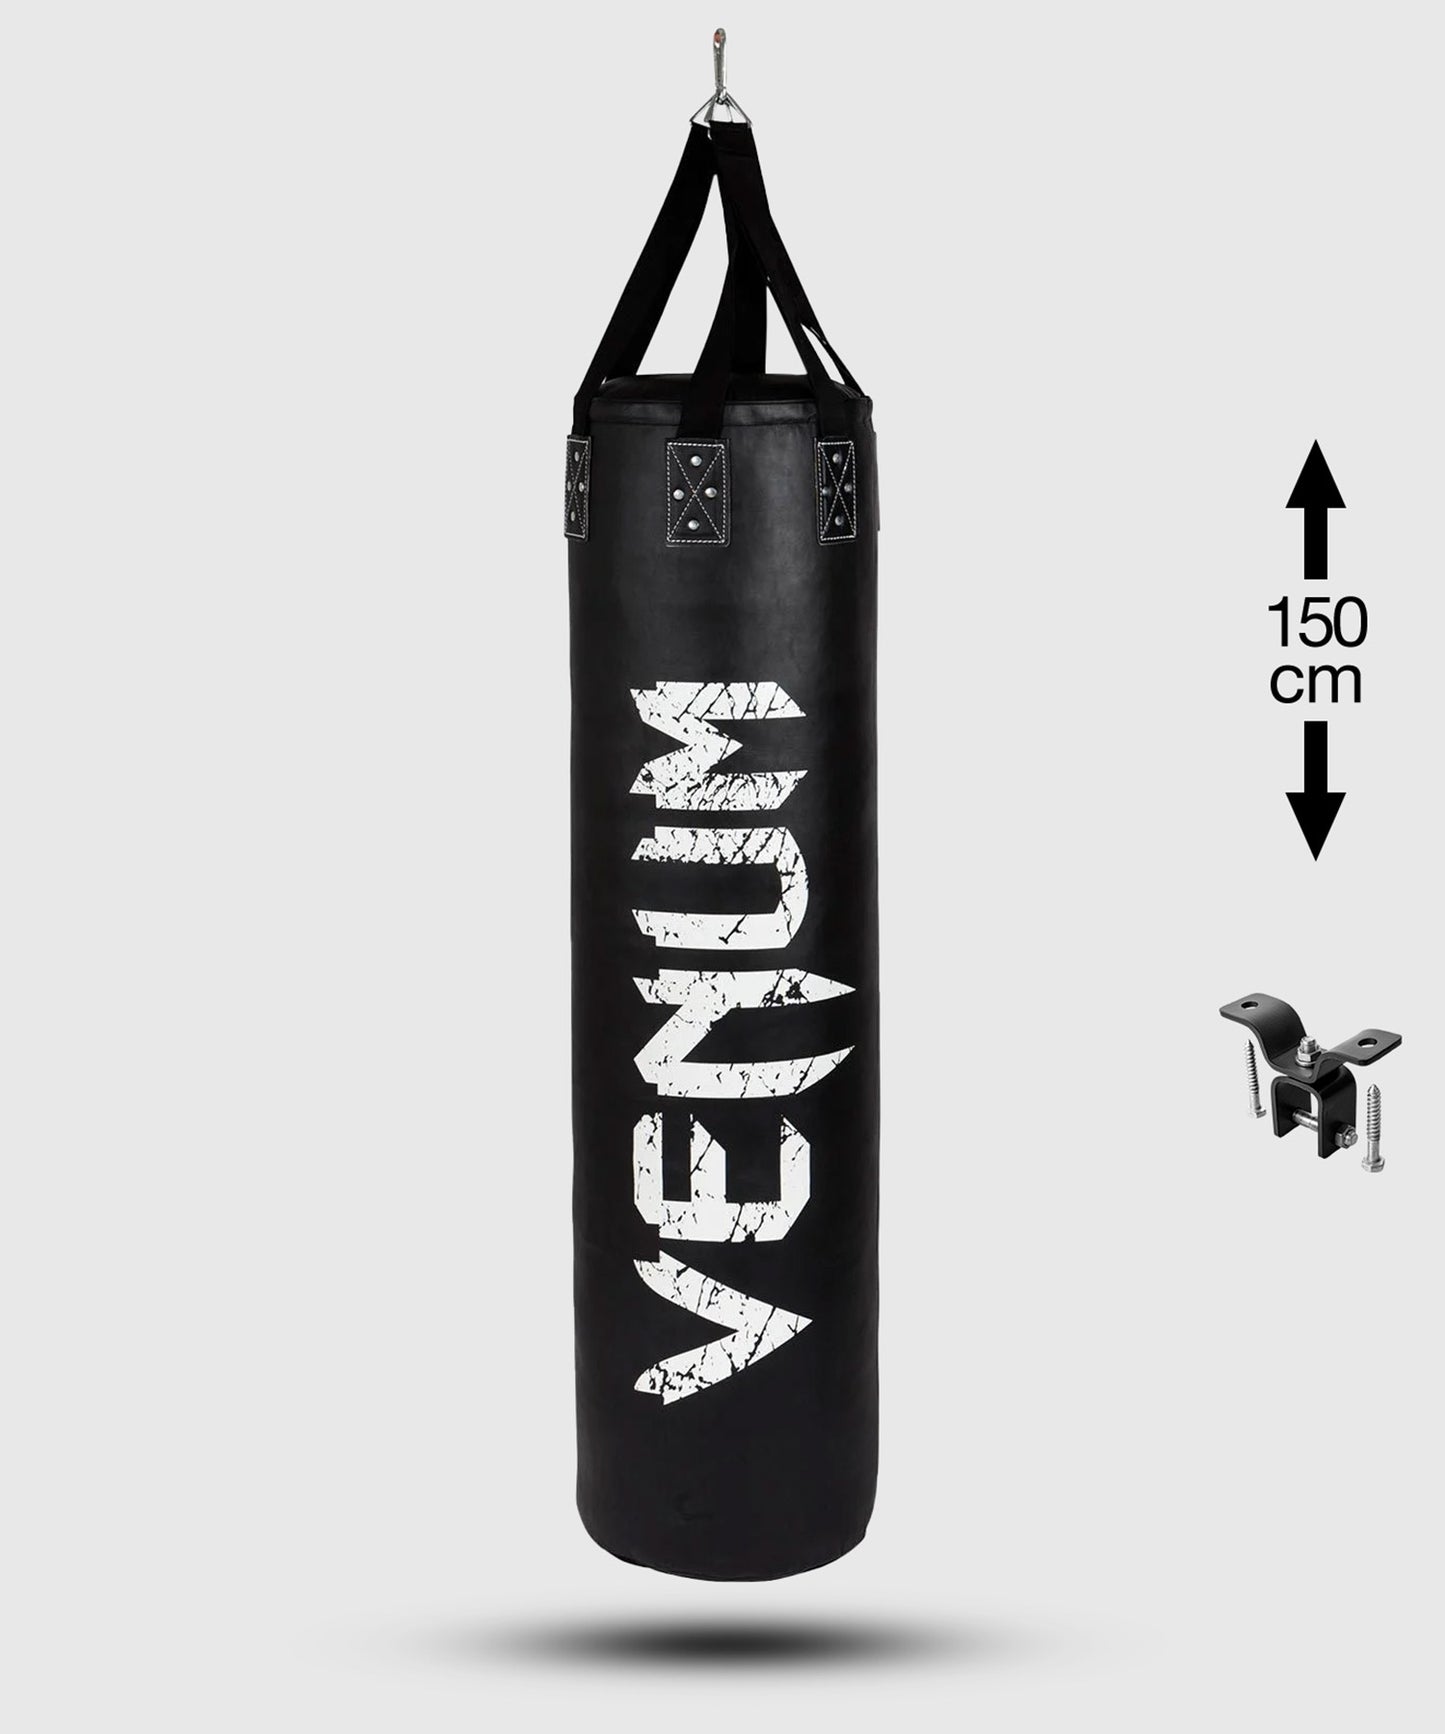 Venum Challenger bokszak (met plafondbevestiging) - Zwart/Wit - 150 cm - gevuld